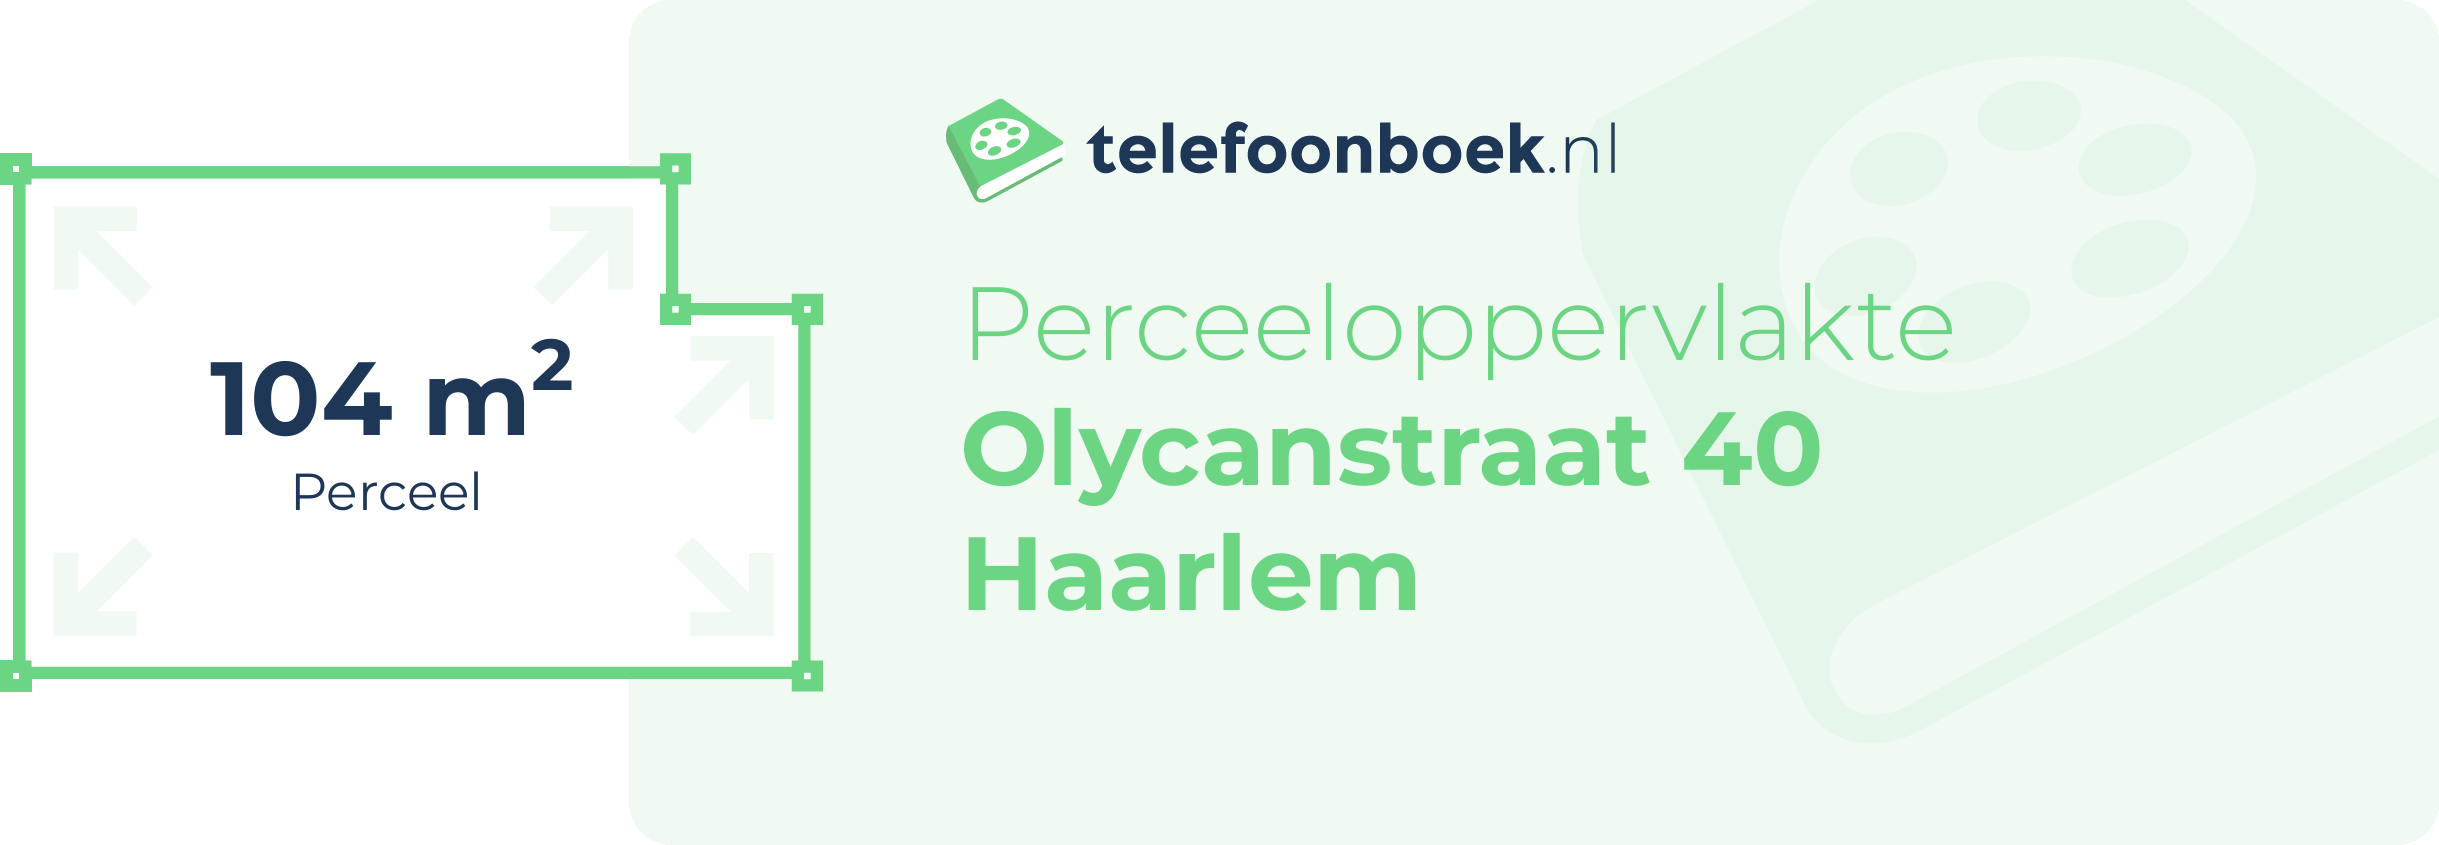 Perceeloppervlakte Olycanstraat 40 Haarlem